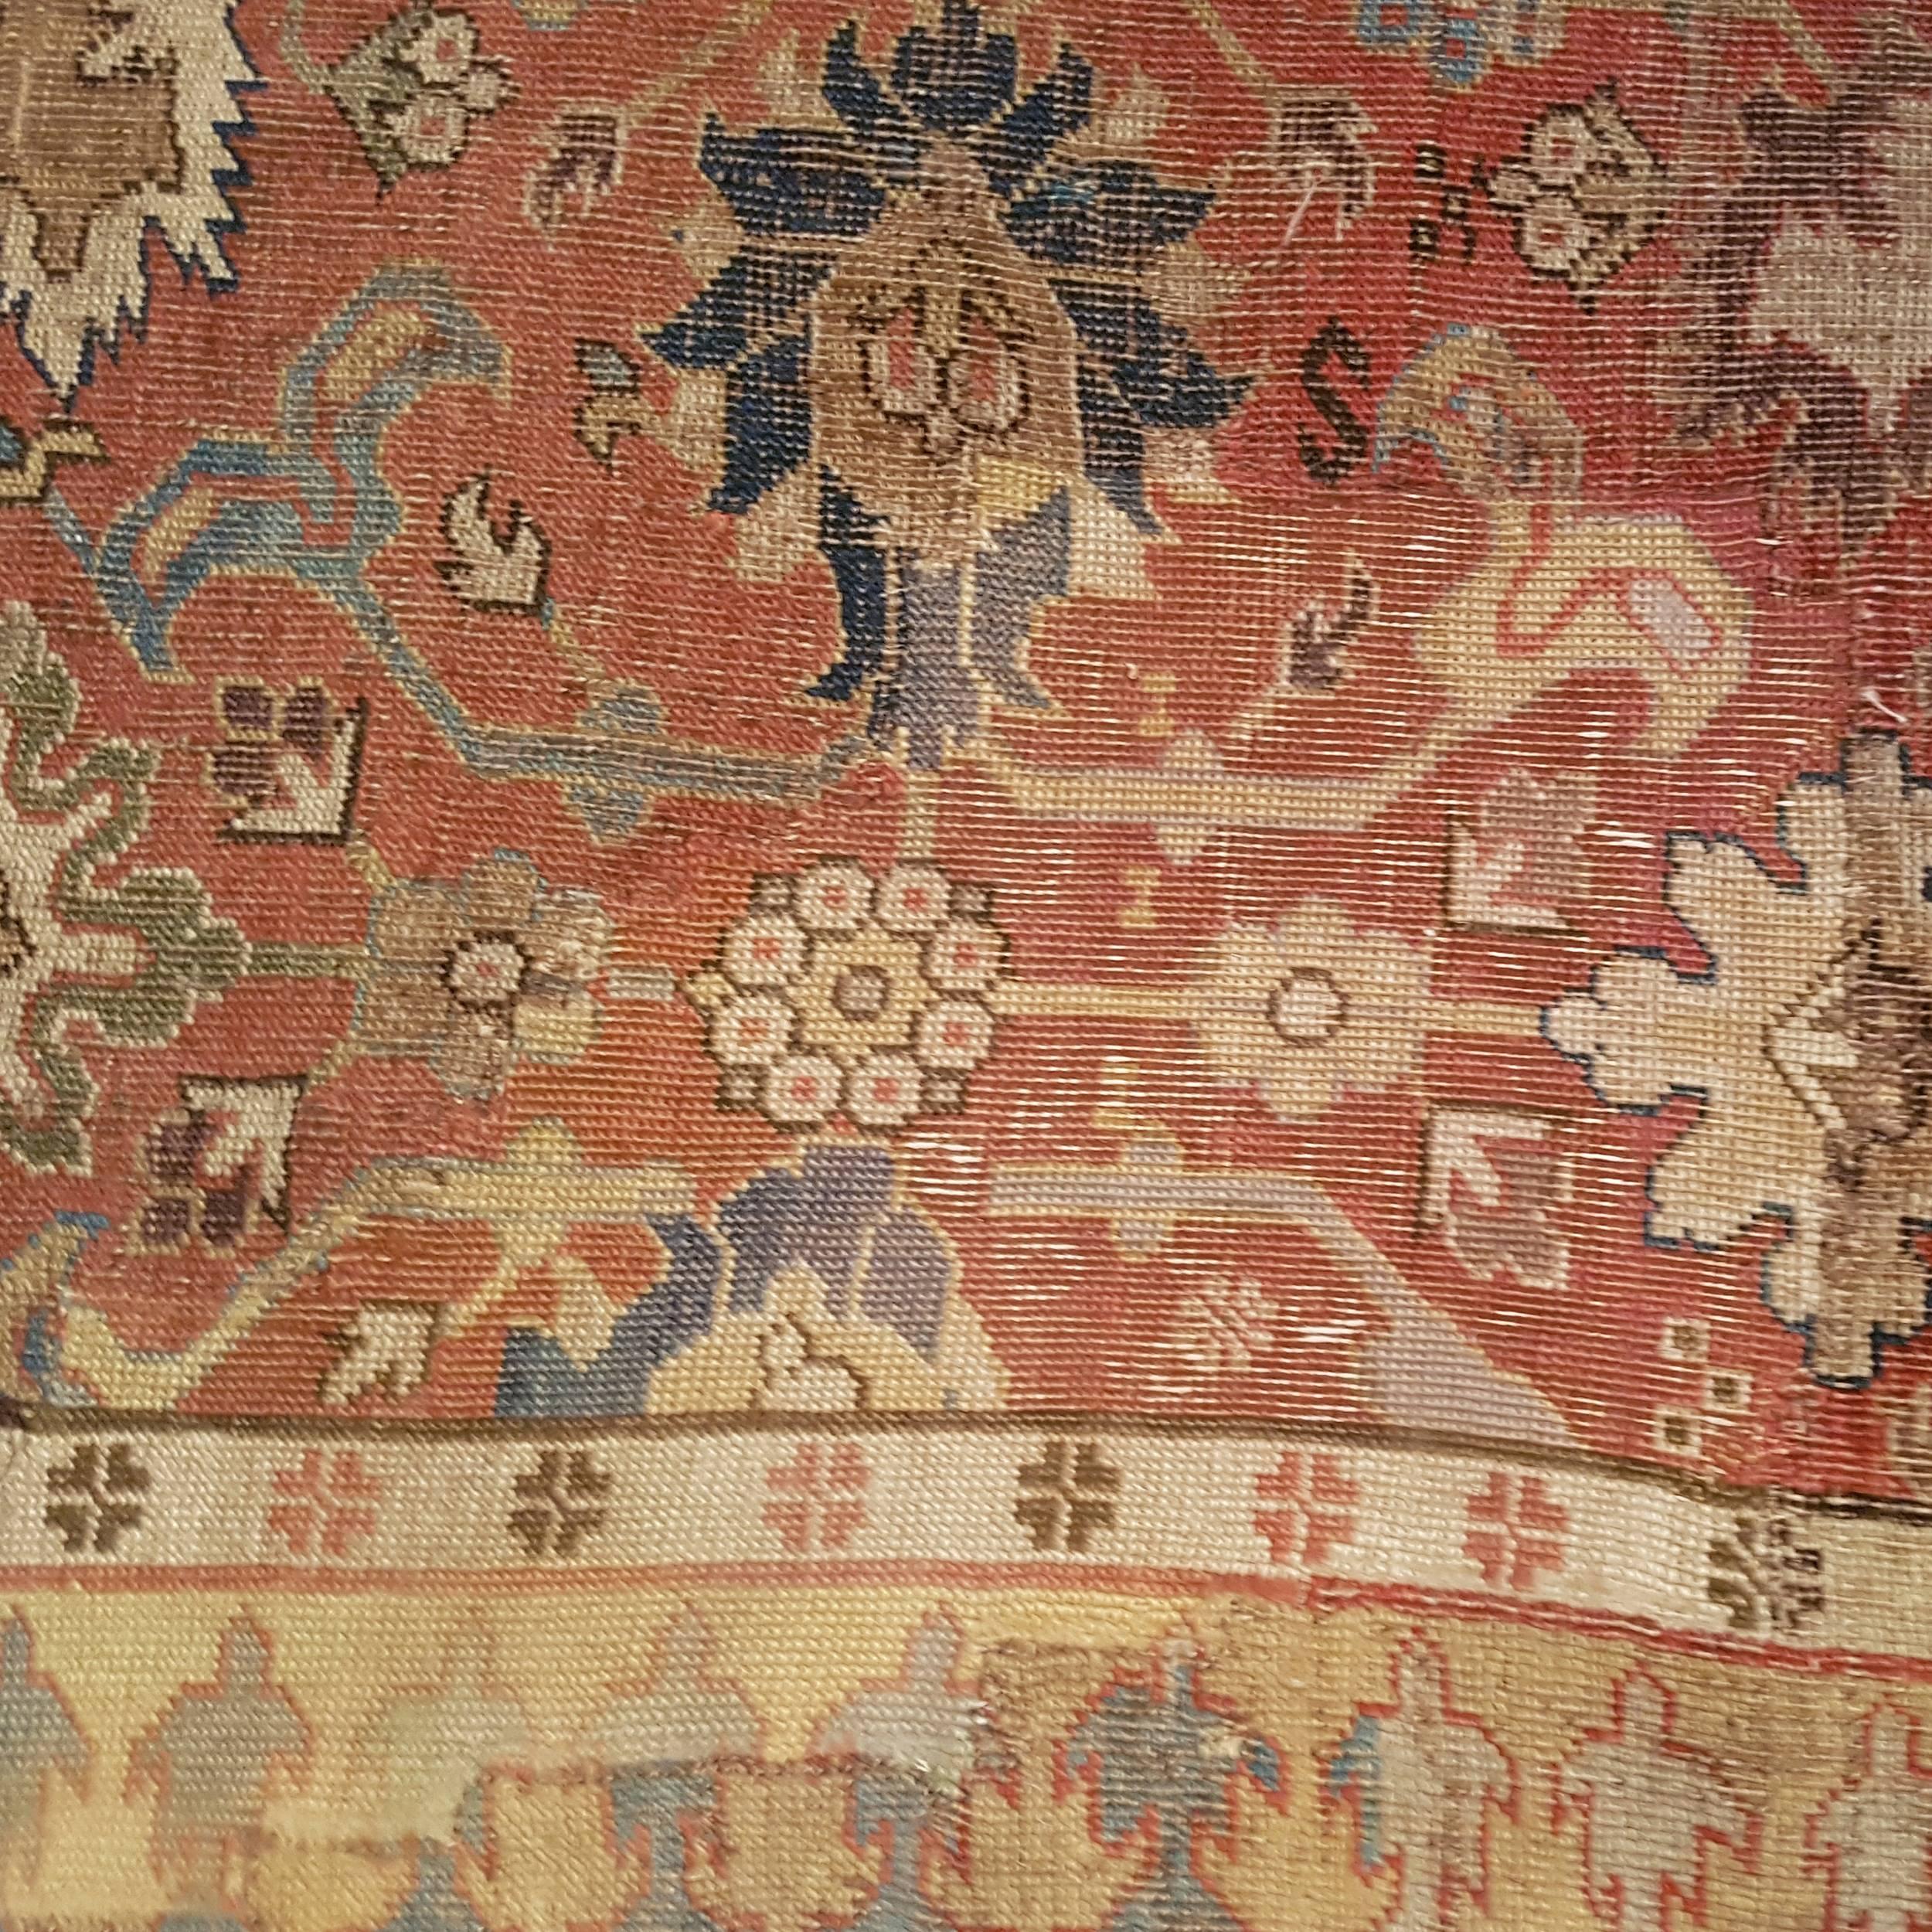 Tapis caucasien extrêmement rare et ancien, provenant de l'actuelle Arménie, orné d'un motif répété à l'infini de palmettes alternant avec des arabesques à feuilles divisées, également connu sous le nom de motif 